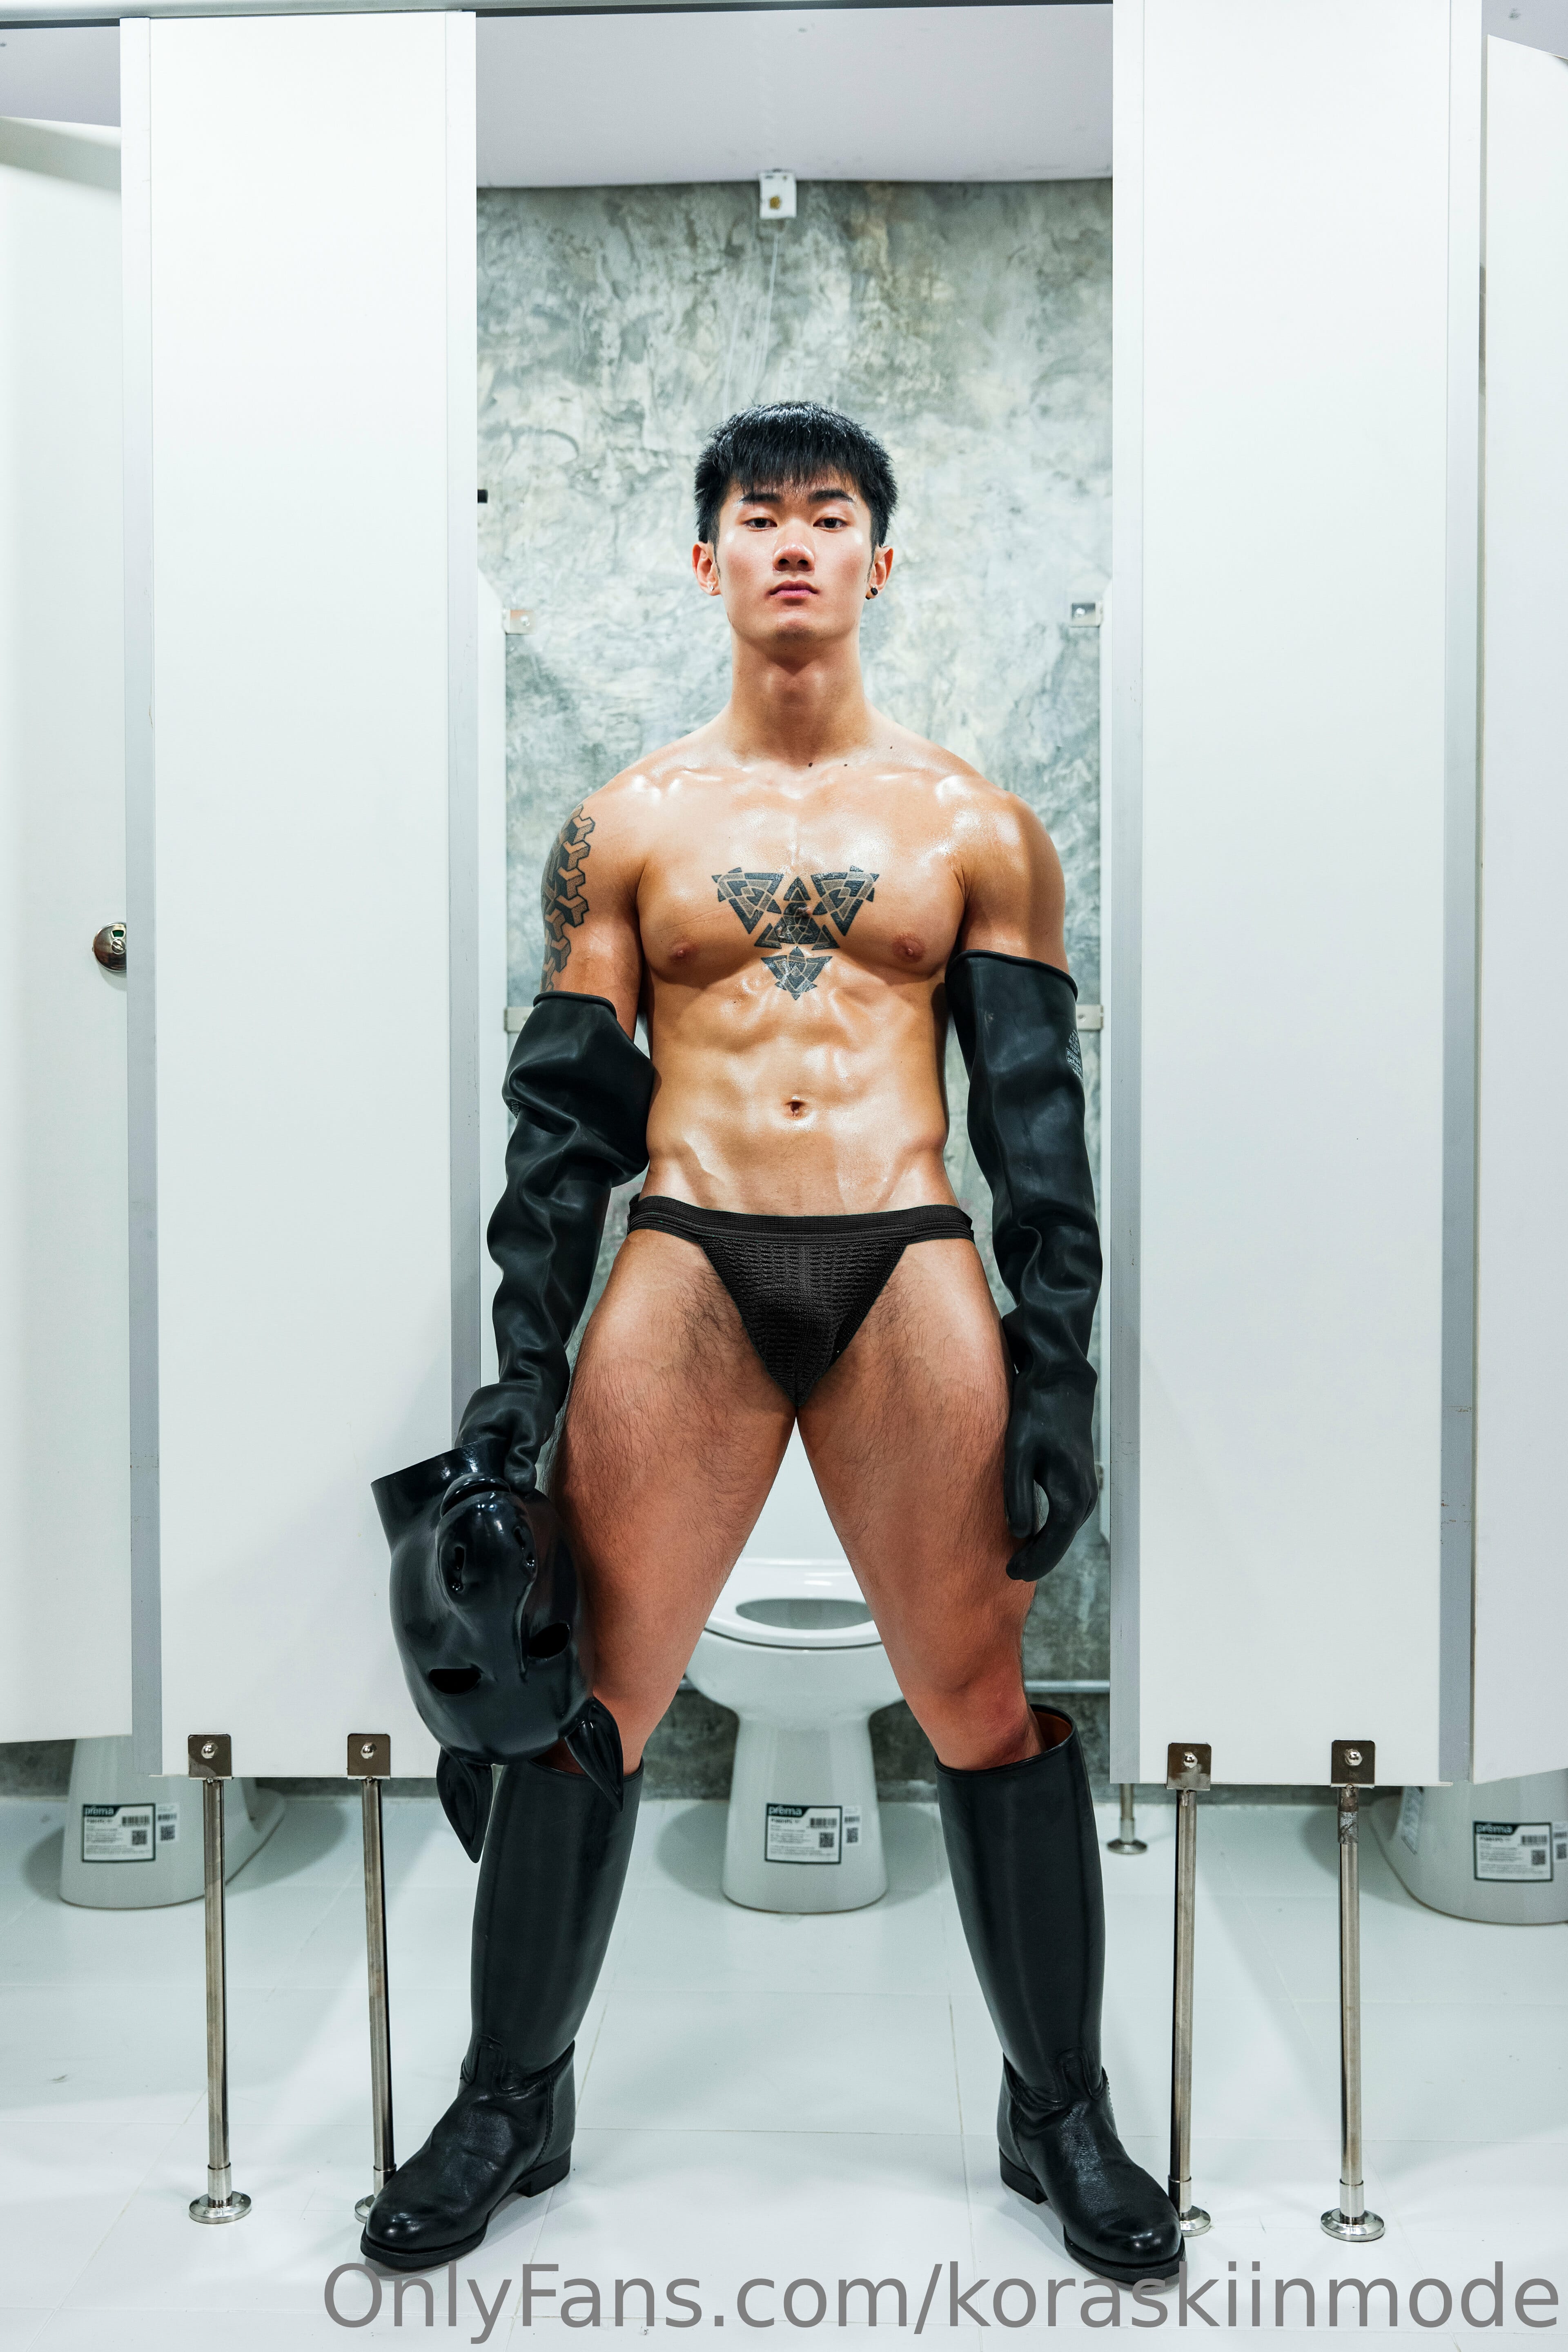 Kora SkiinMode collection P77 – The toilet  Hong ‖ R+【PHOTO】